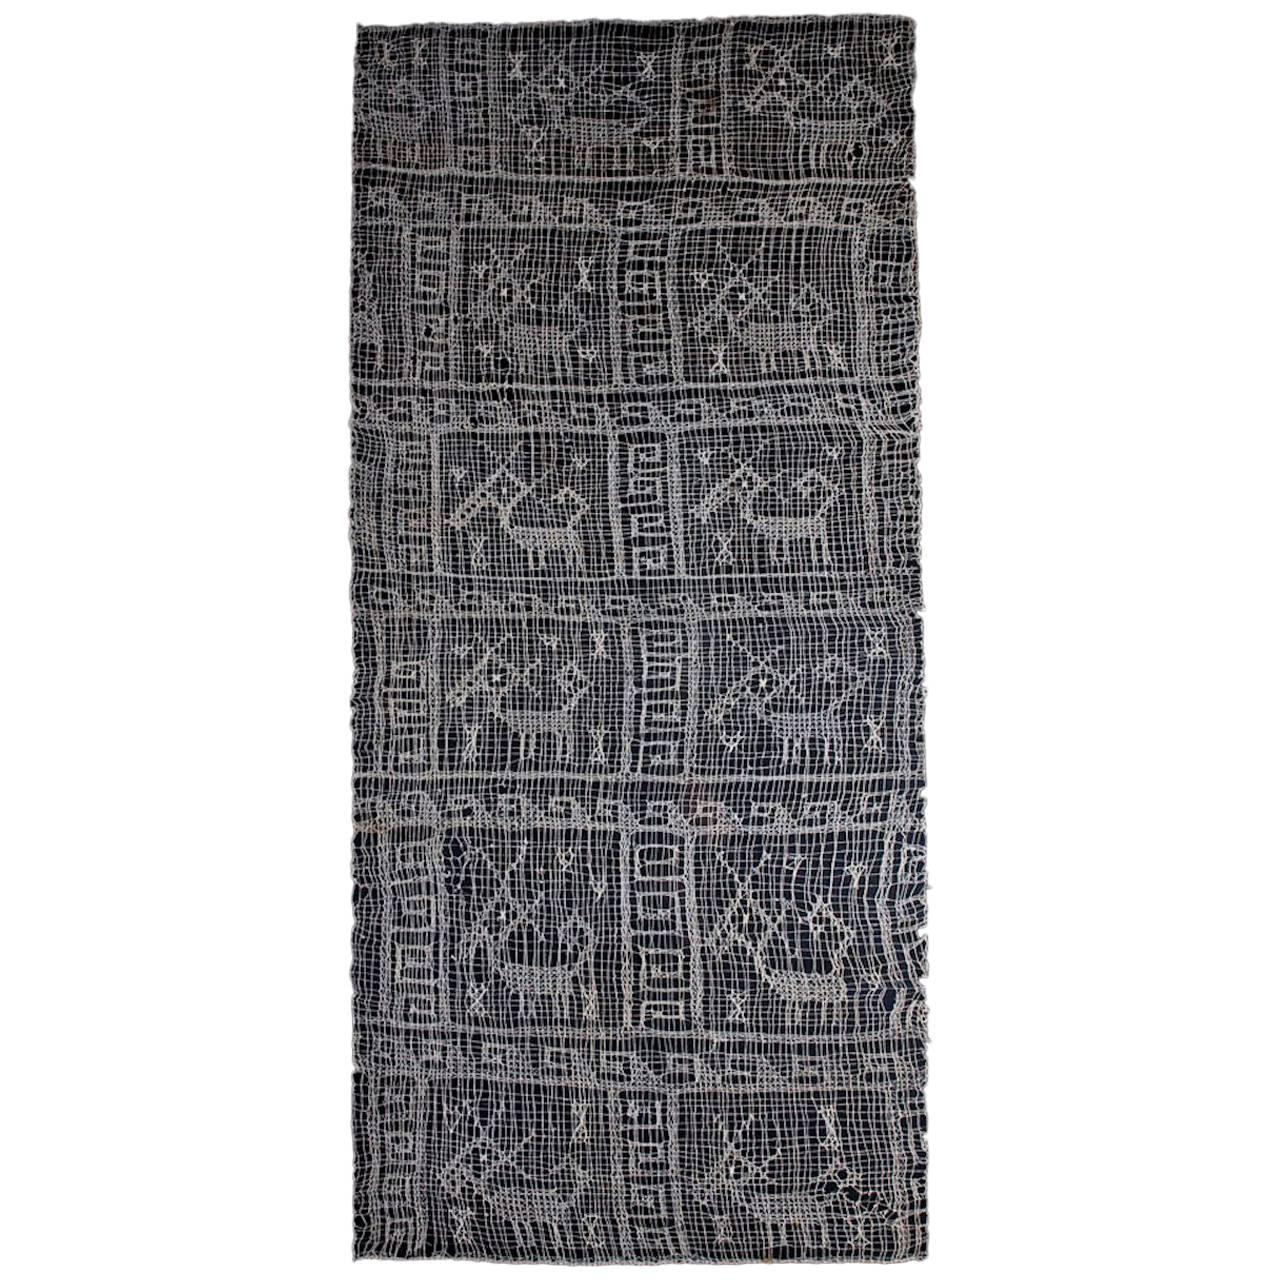 Pre-Columbianisches Chancay-Gaze-Textil mit 12 Tieren, Ex-Kate Kemper